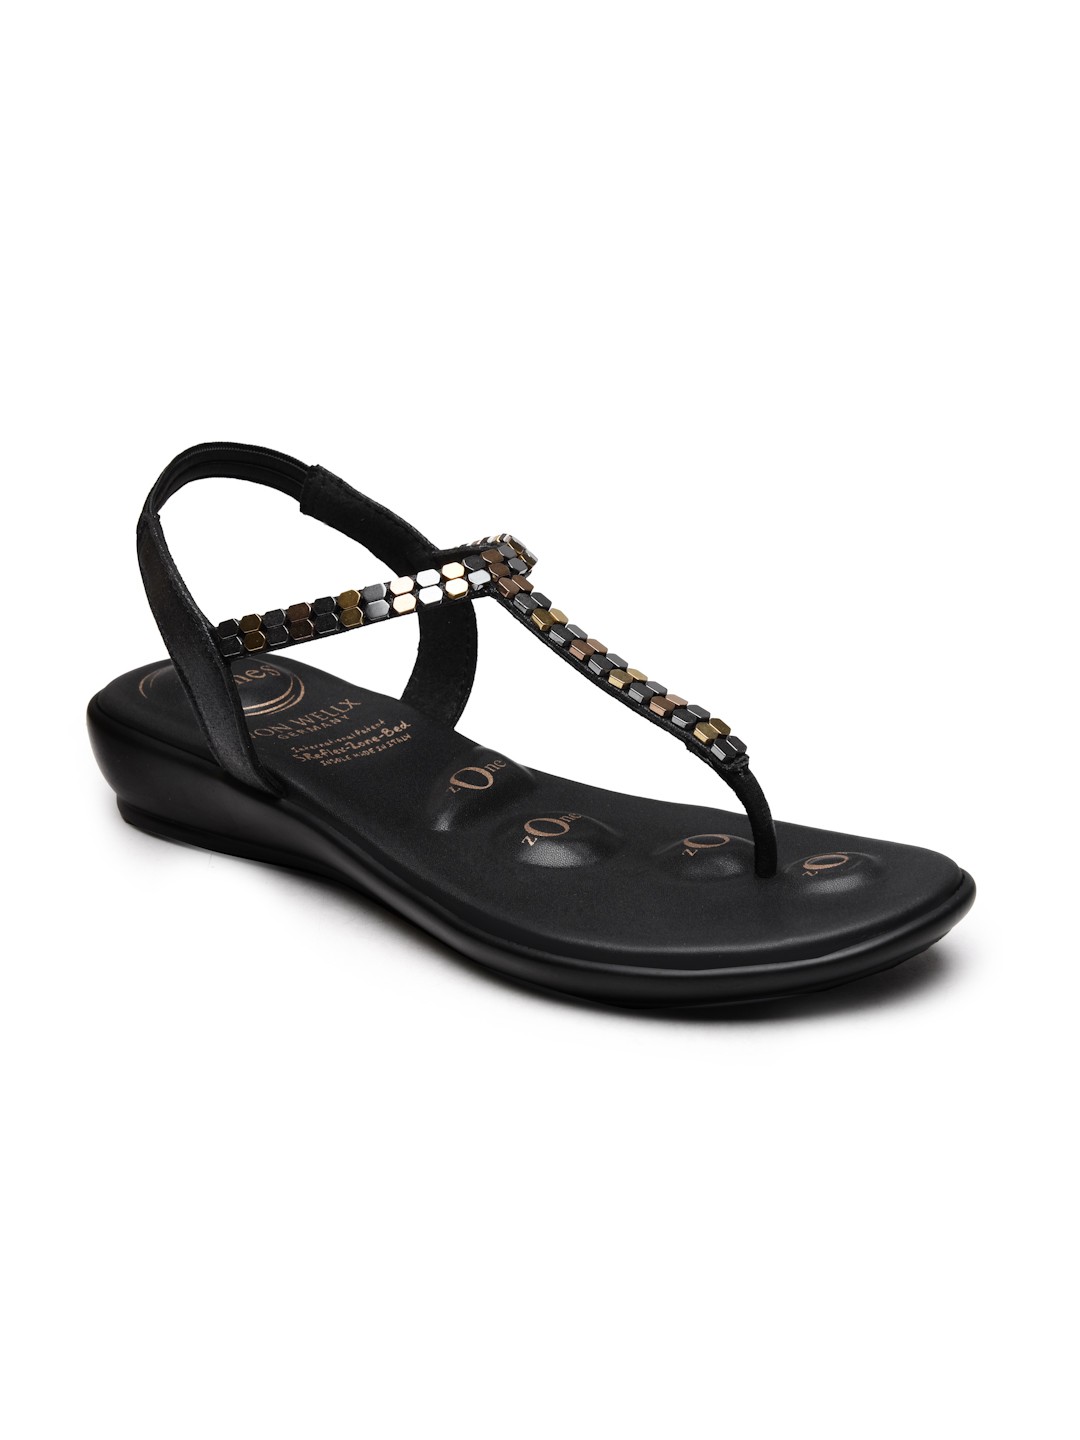 Buy Von Wellx Germany Comfort Women's Black Casual Sandals Regina Online in Ludhiana